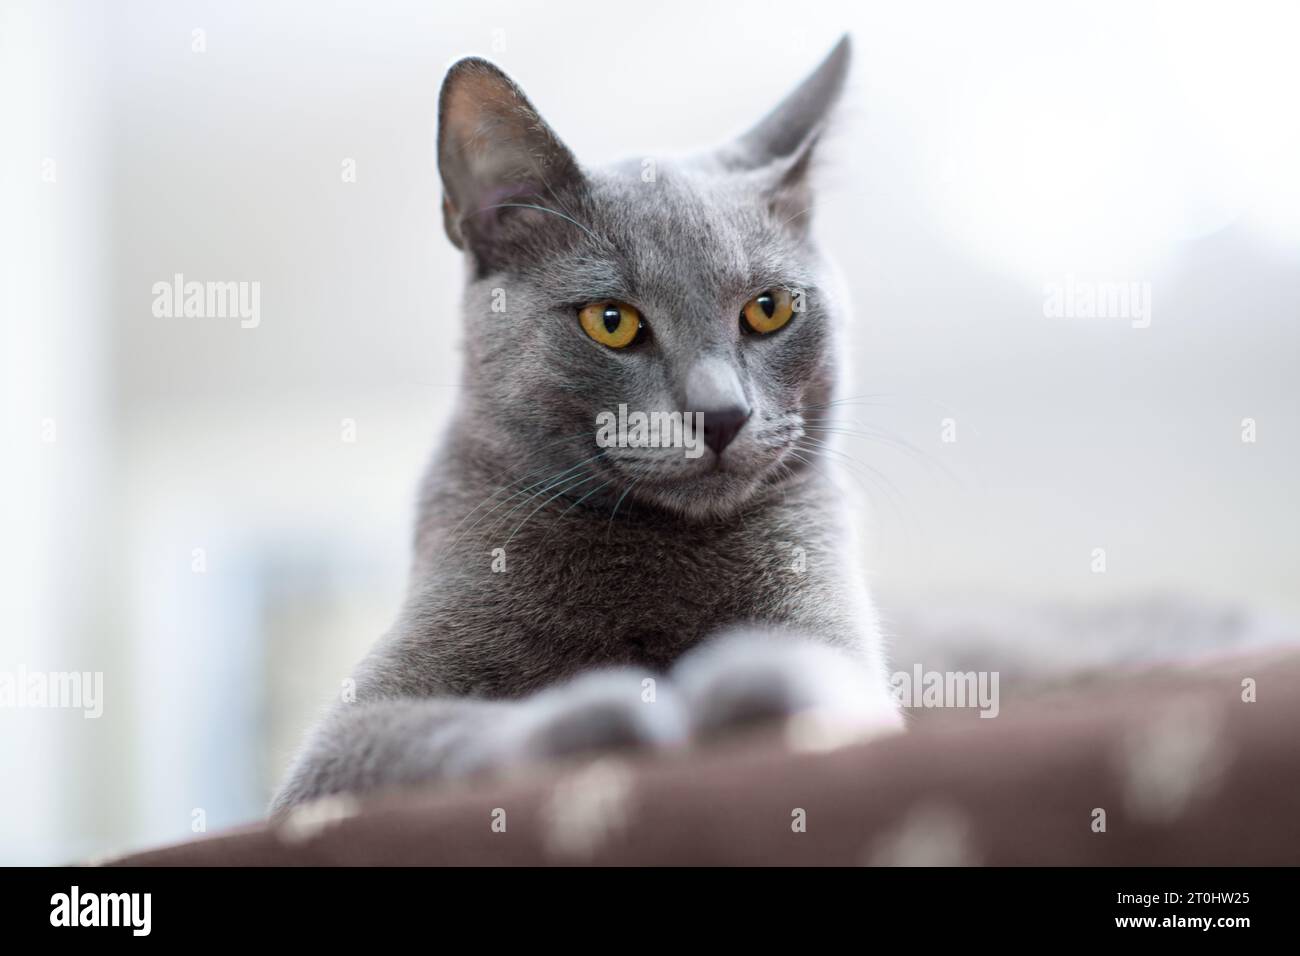 Un intimo primo piano di un gatto russo blu al chiuso, accentuando i suoi occhi blu intenso e la pelliccia blu argentato con una profondità di campo ridotta Foto Stock